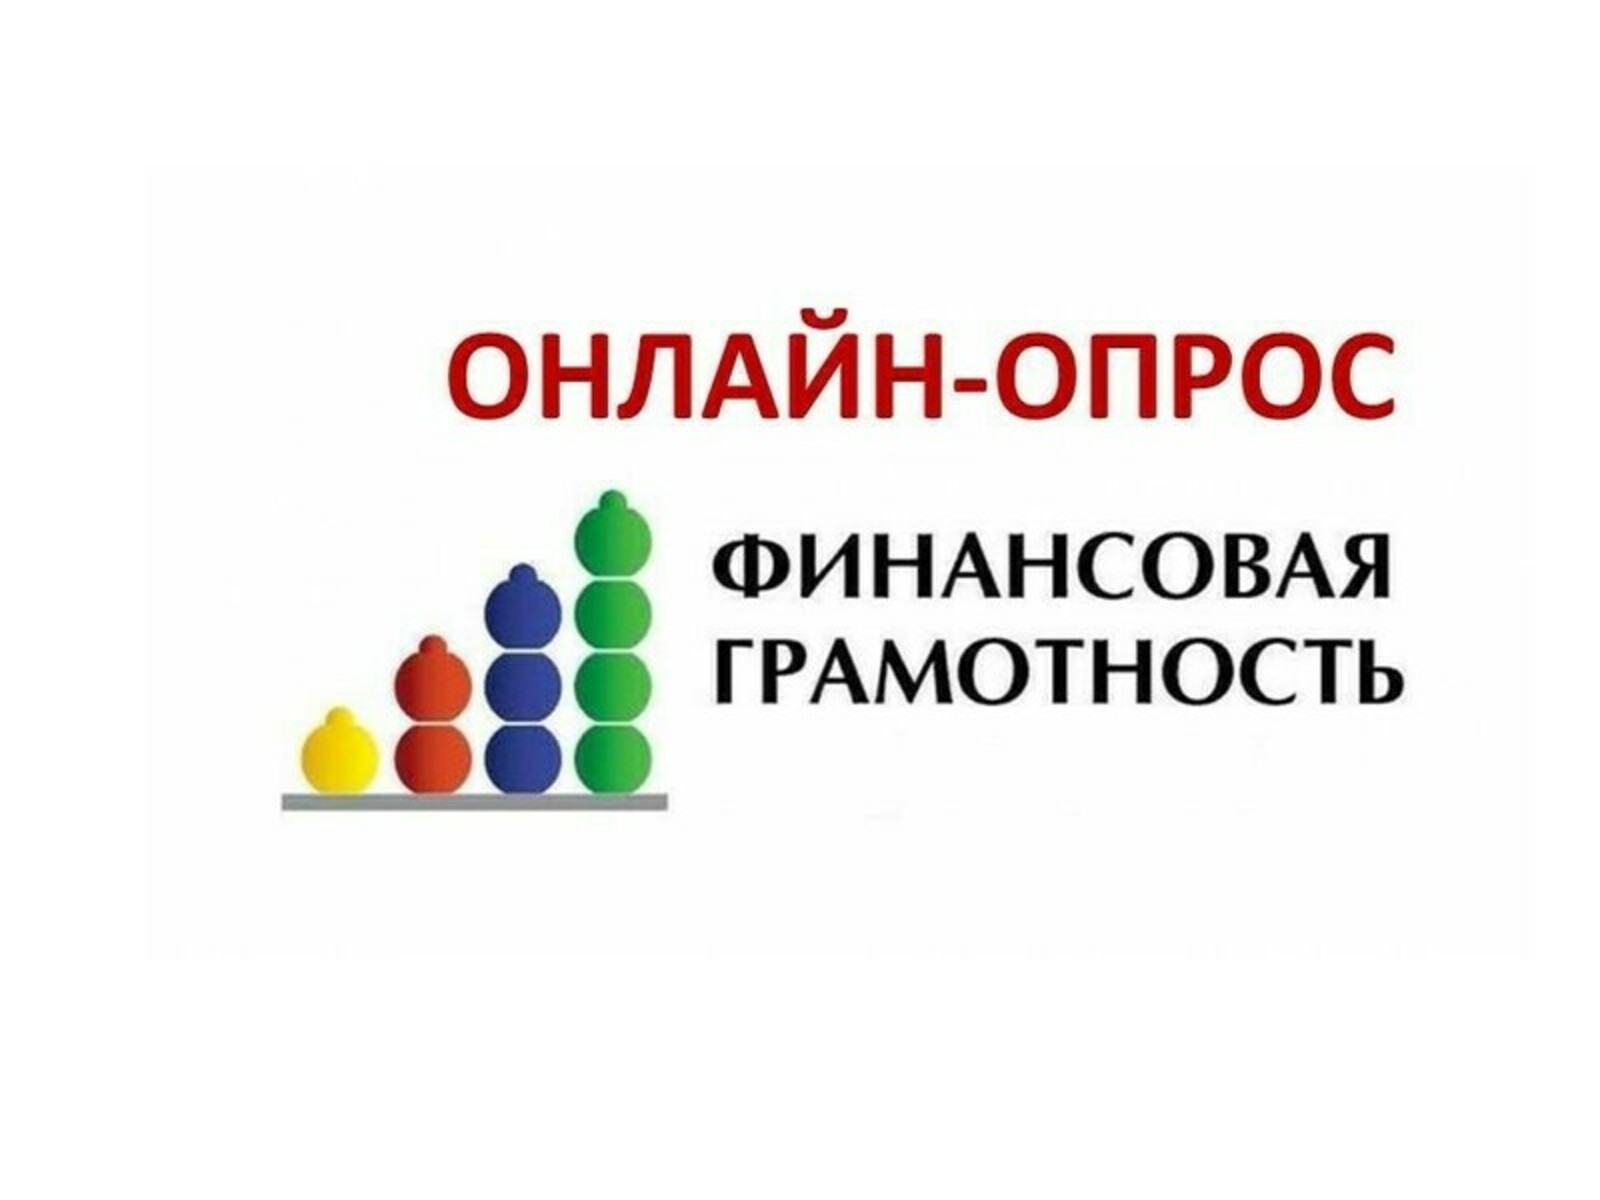 Минфин Республики Башкортостан приглашает население республики принять участие в опросе по финансовой грамотности